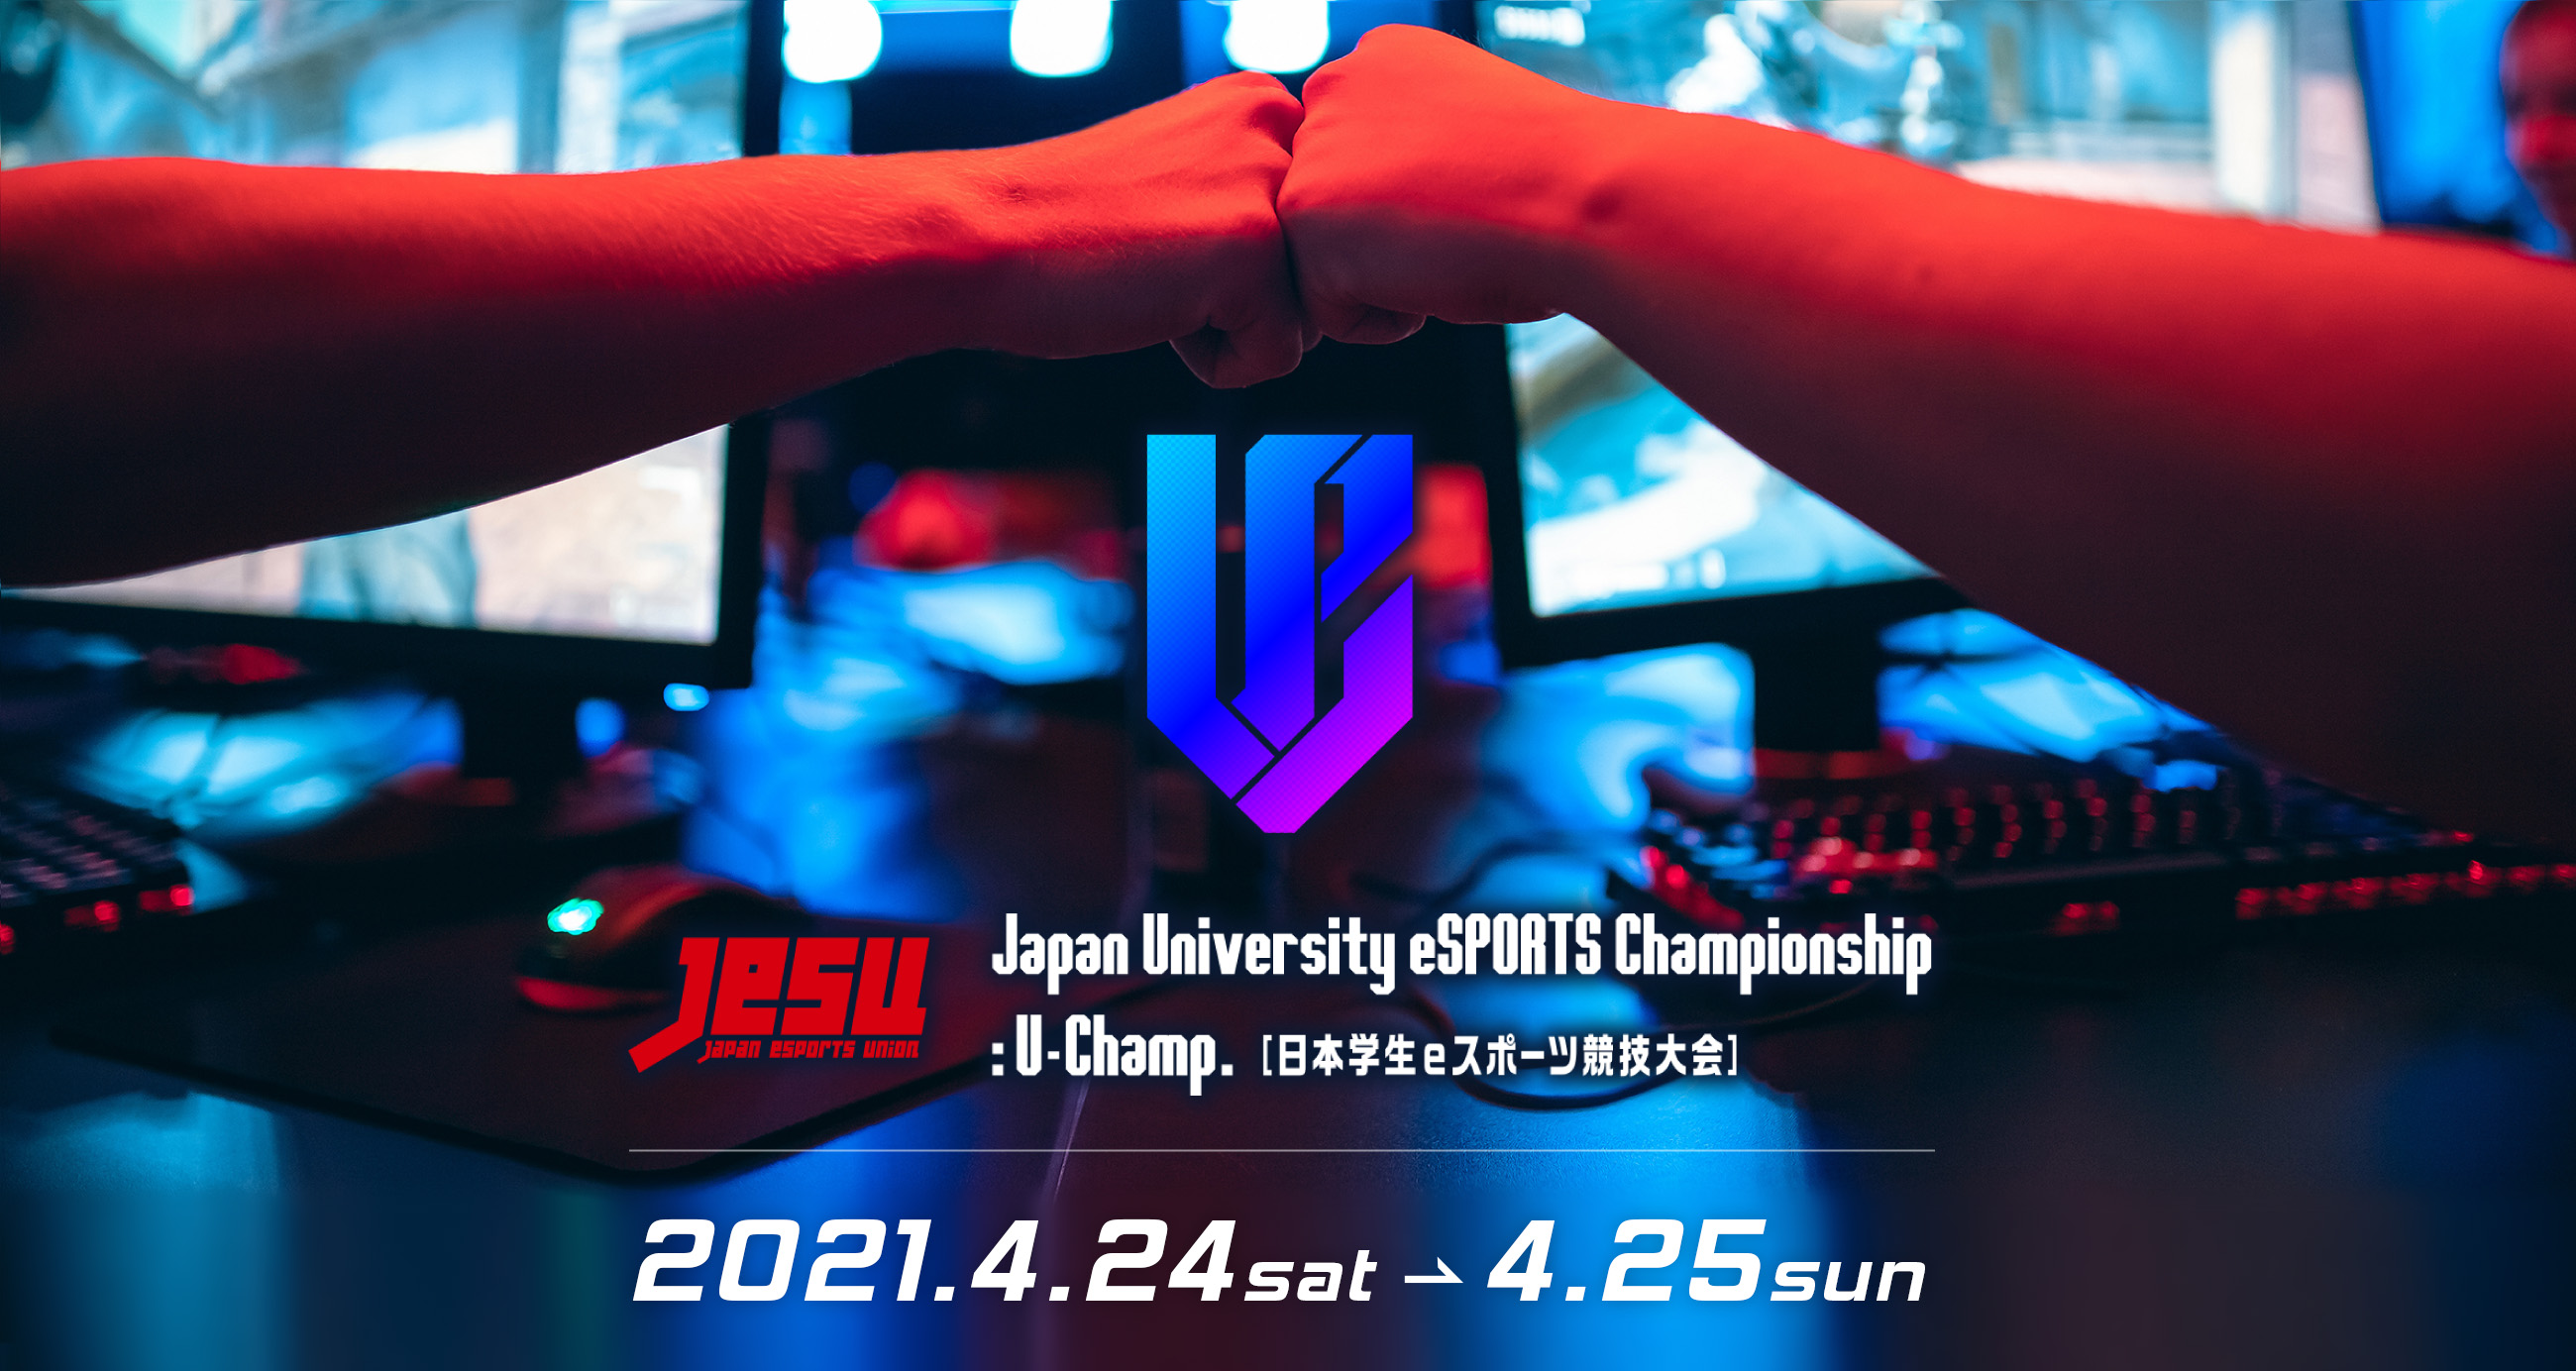 JeSU 日本学生eスポーツ競技大会 2021.4.24 - 4.25